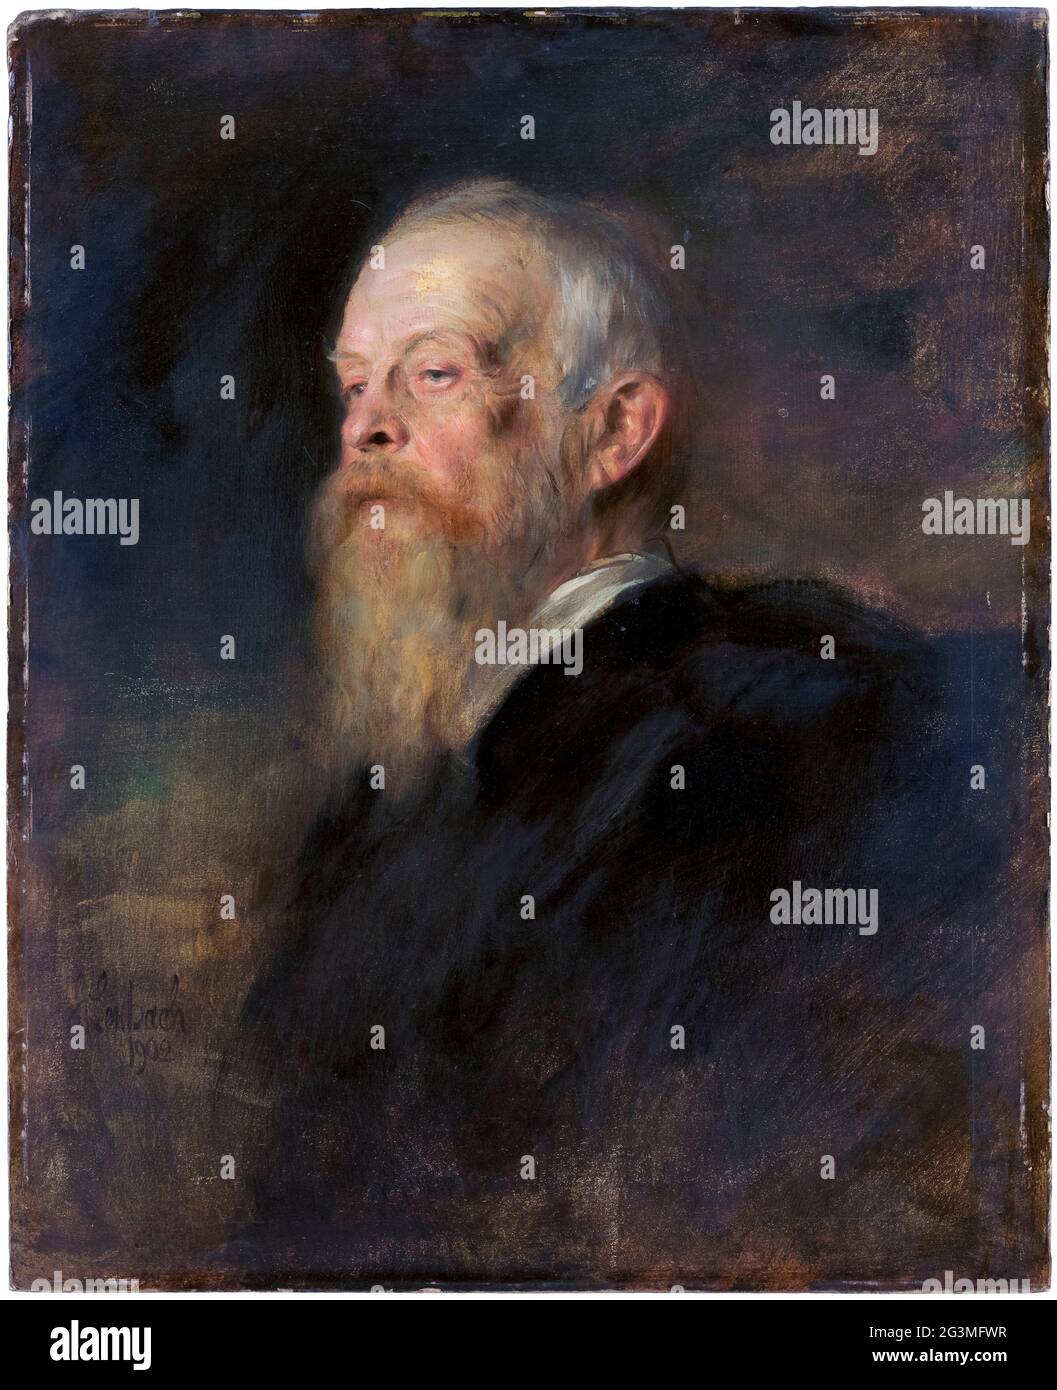 Luitpold (1821-1912) Prince Regent of Bavaria, de facto ruler of Bavaria, (1886-1912), portrait painting by Franz von Lenbach, 1902 Stock Photo